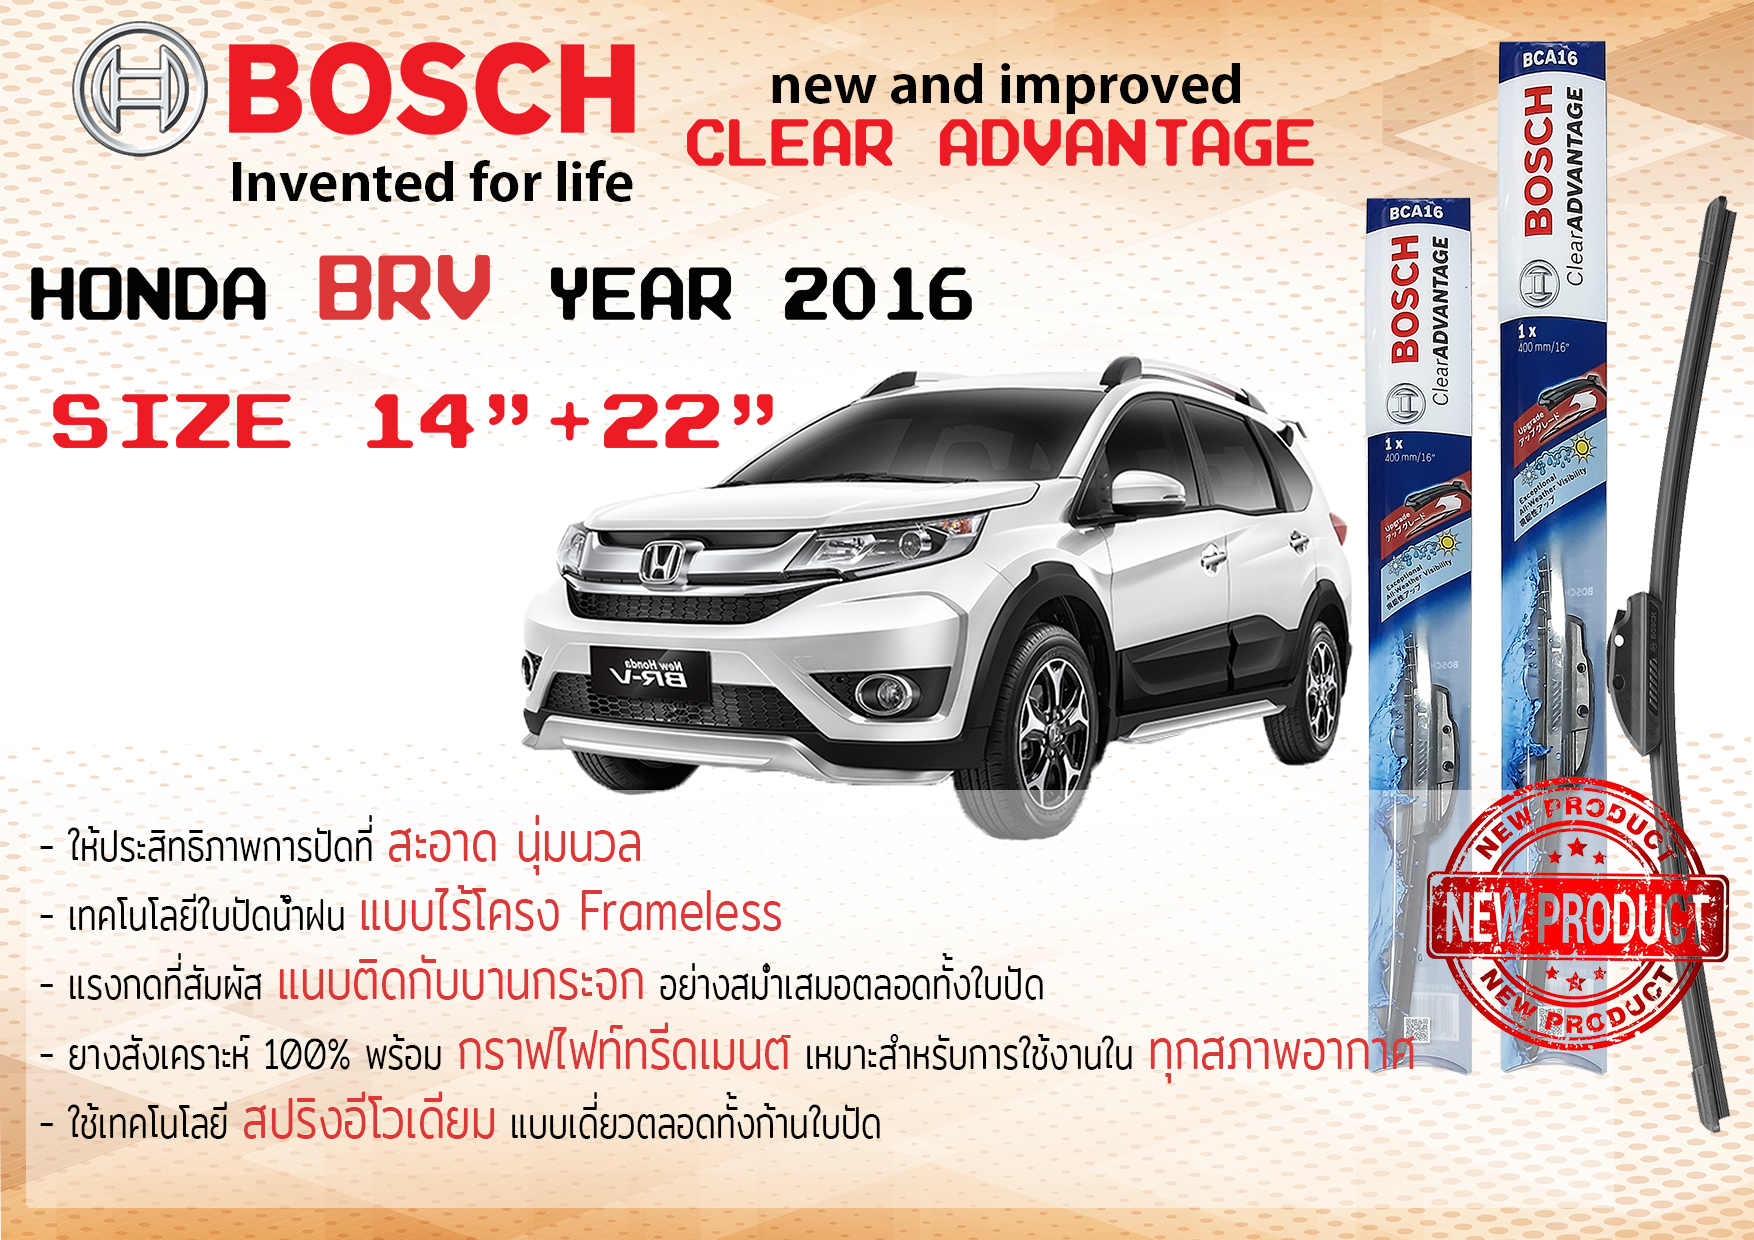 ใบปัดน้ำฝน คู่หน้า Bosch Clear Advantage frameless ก้านอ่อน ขนาด 22”+14” สำหรับรถ Honda BRV,BR-V ปี 2016-now ปี 16,17,18,19,20,59,60,61,62,63  ทนแสงUV เงียบ รุ่นใหม่